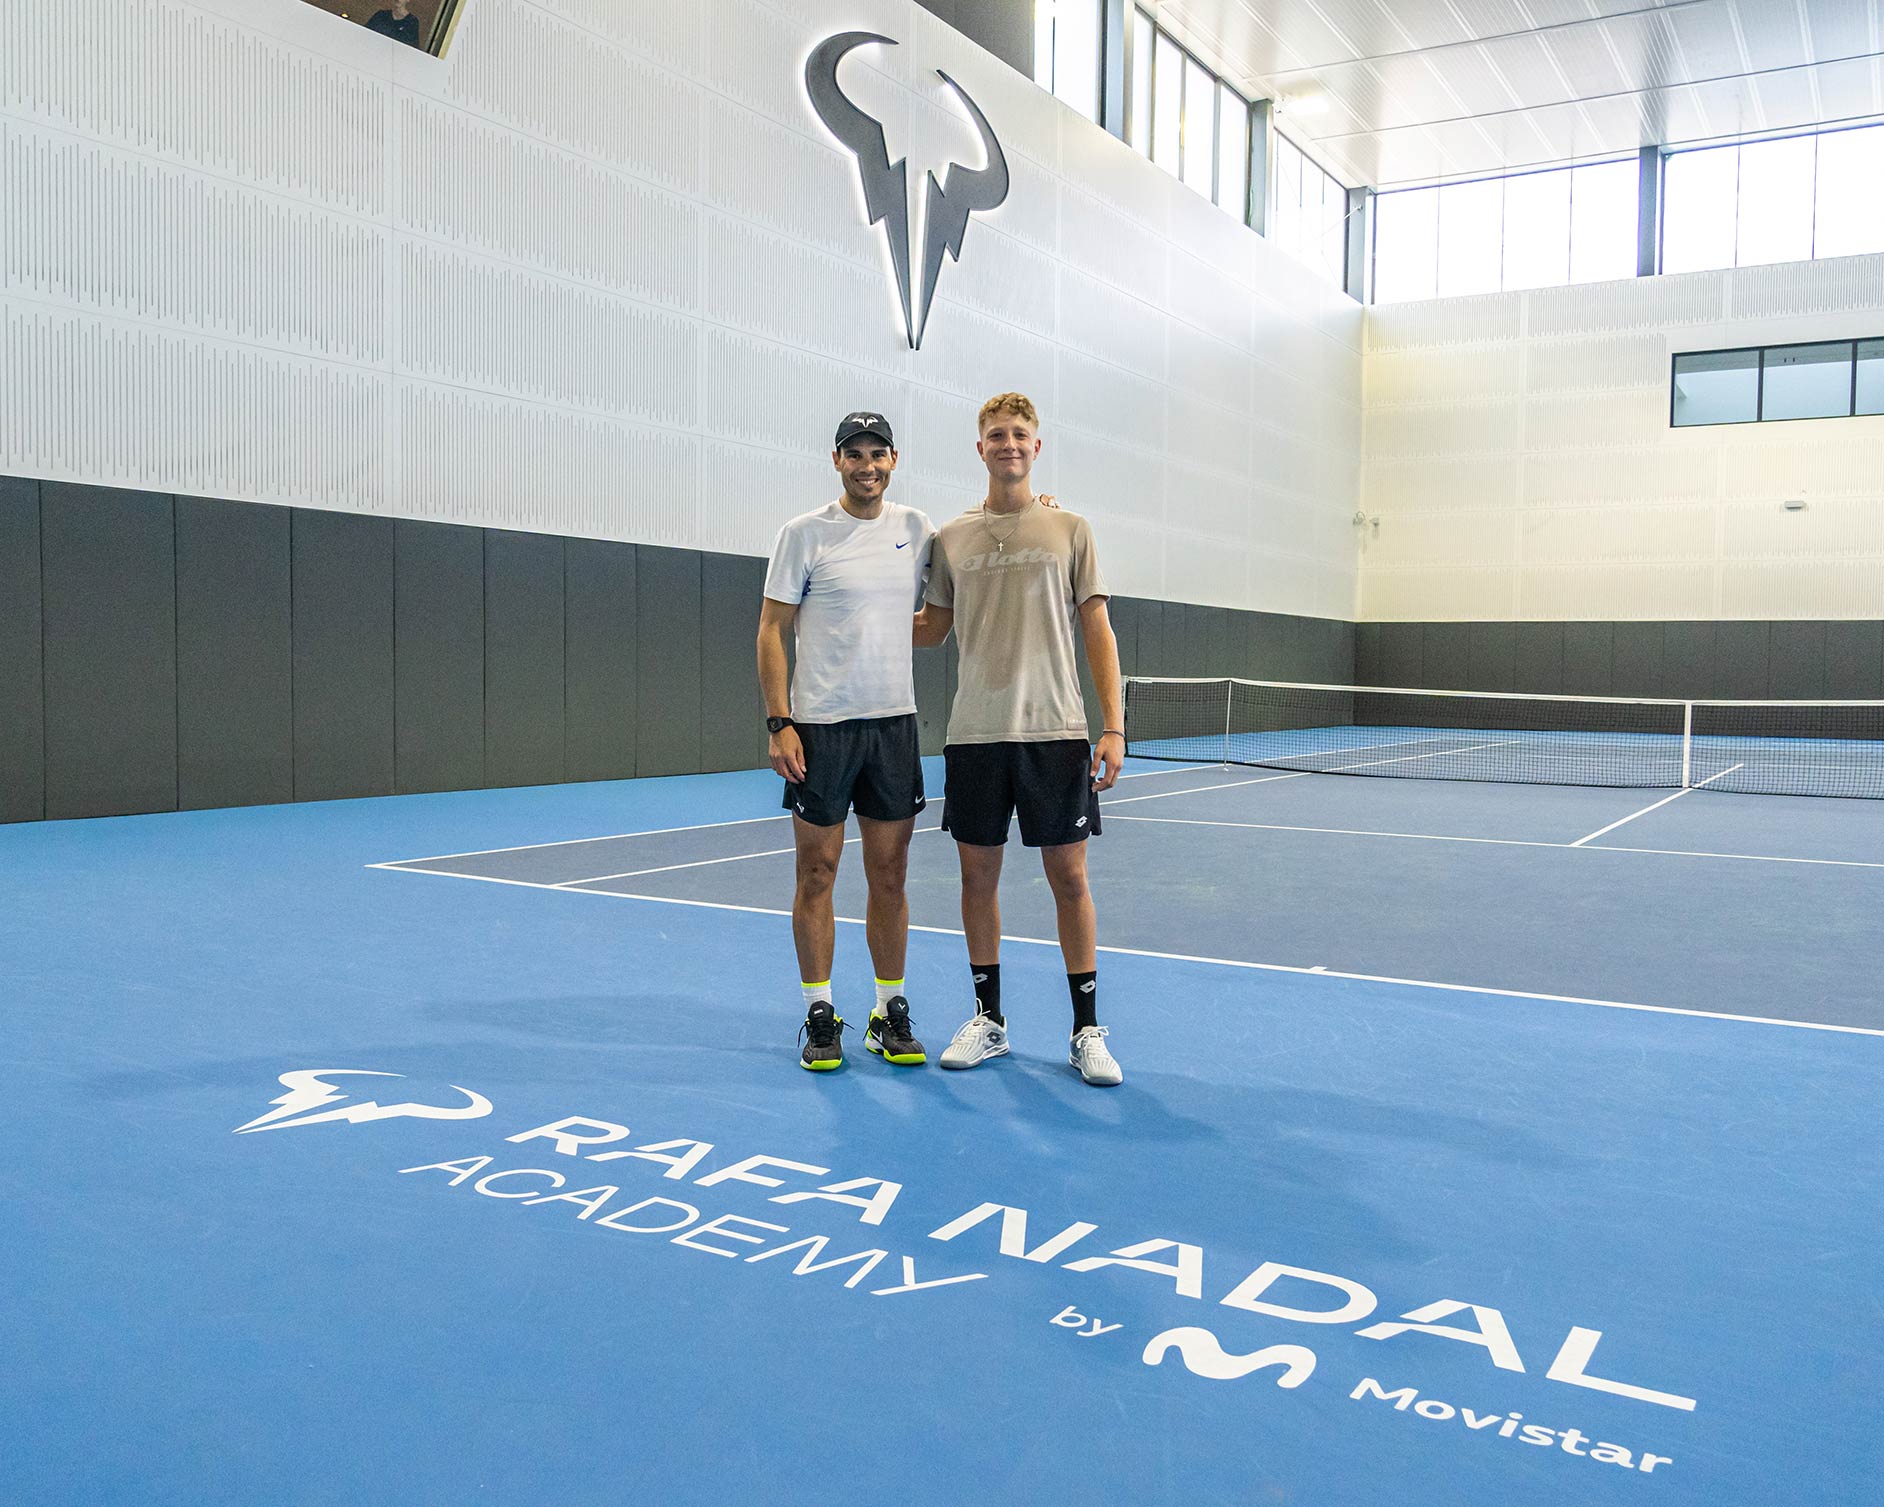 Martín Landaluce, estrella de los torneos ITF en la Rafa Nadal Academy by Movistar